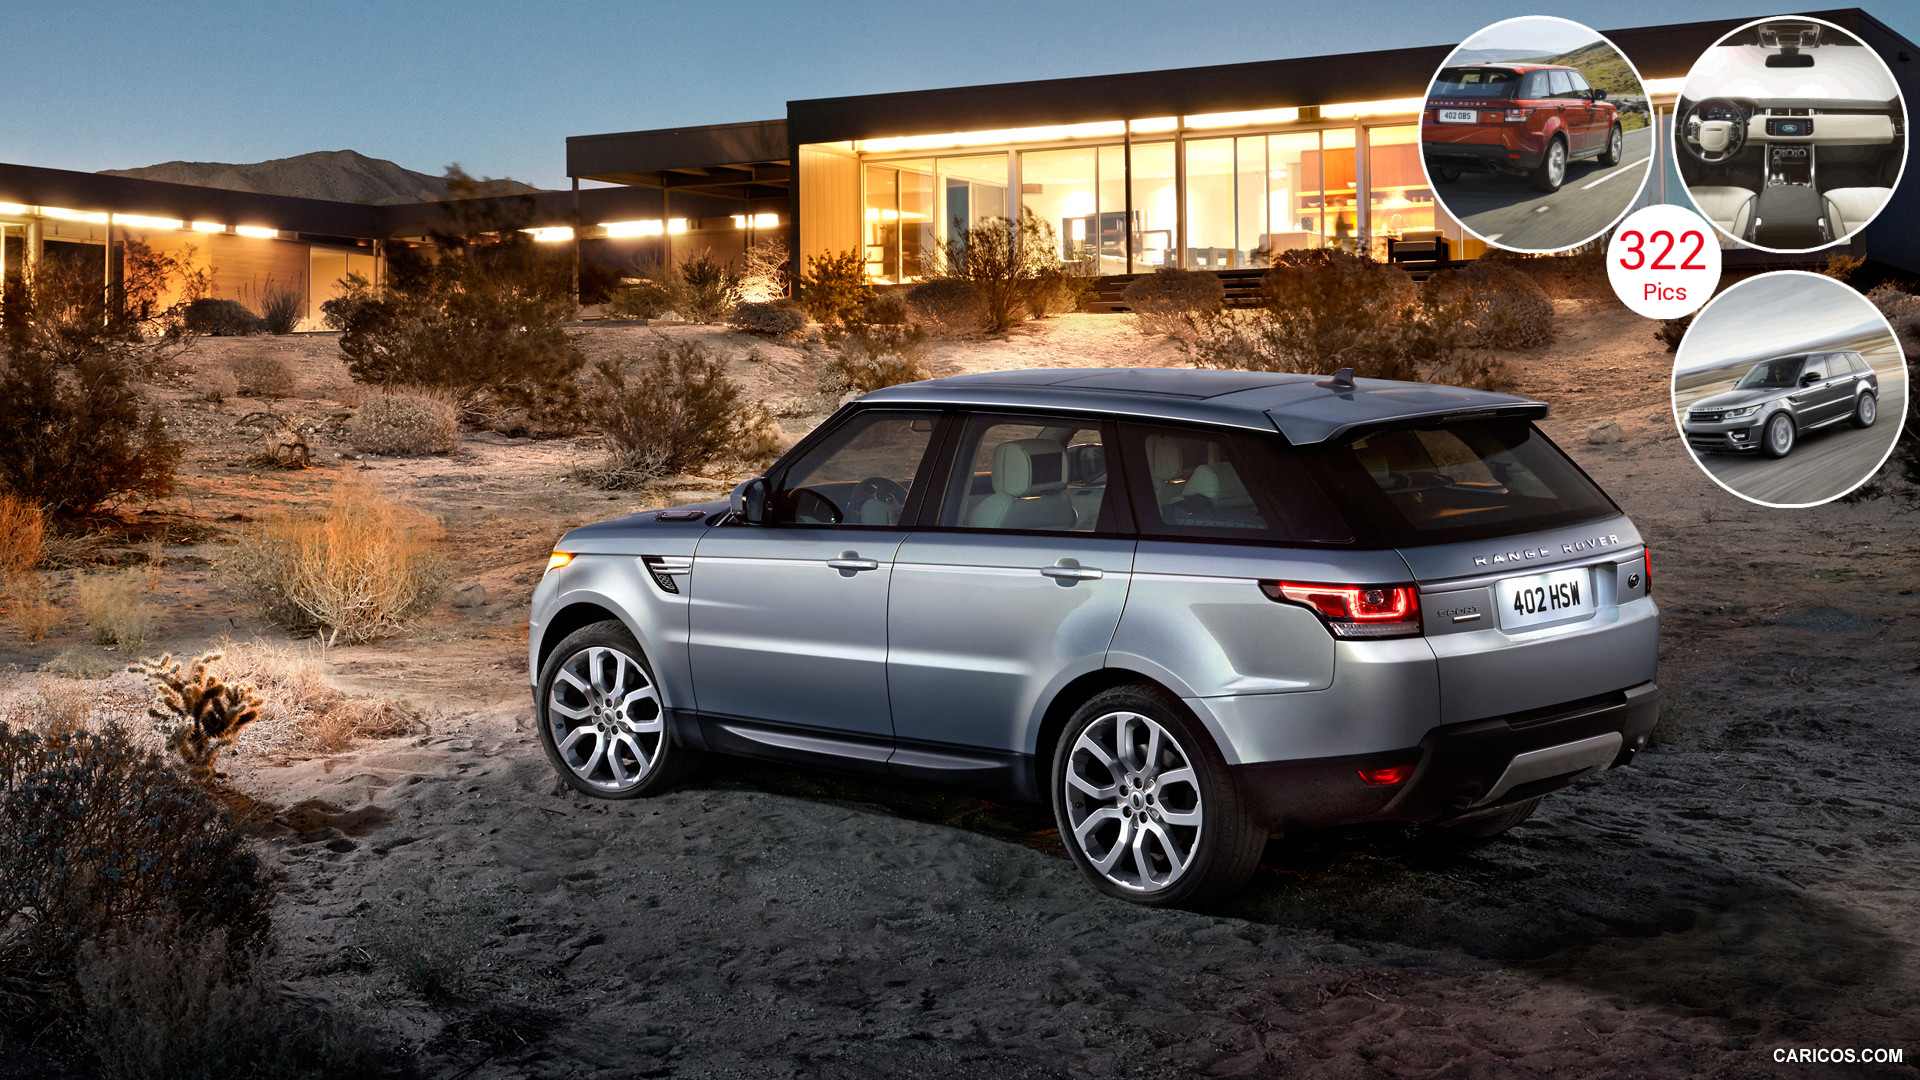 2014 Range Rover Sport | Caricos.com